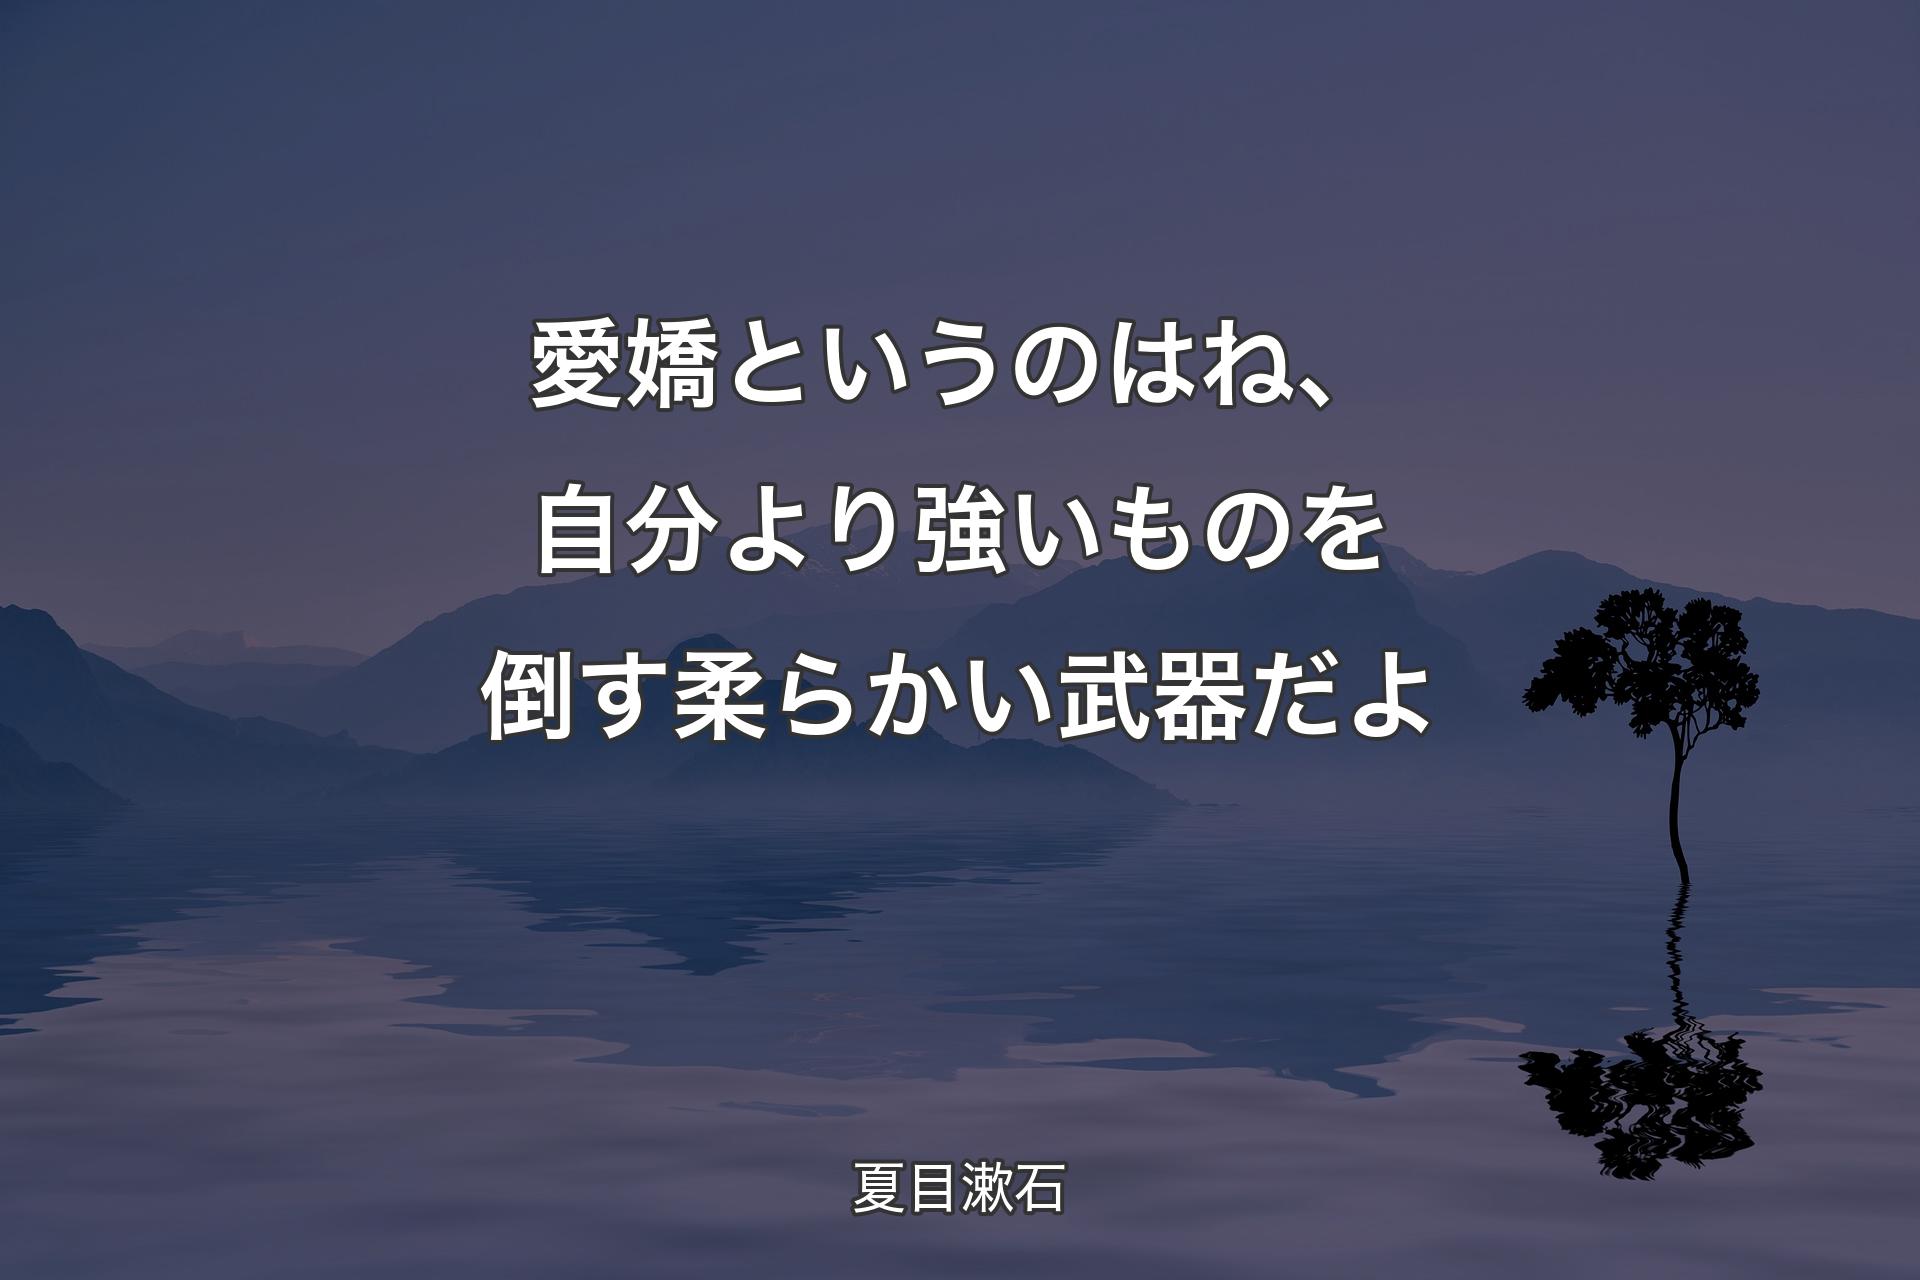 【背景4】愛嬌というのはね、自分よ�り強いものを倒す柔らかい武器だよ - 夏目漱石